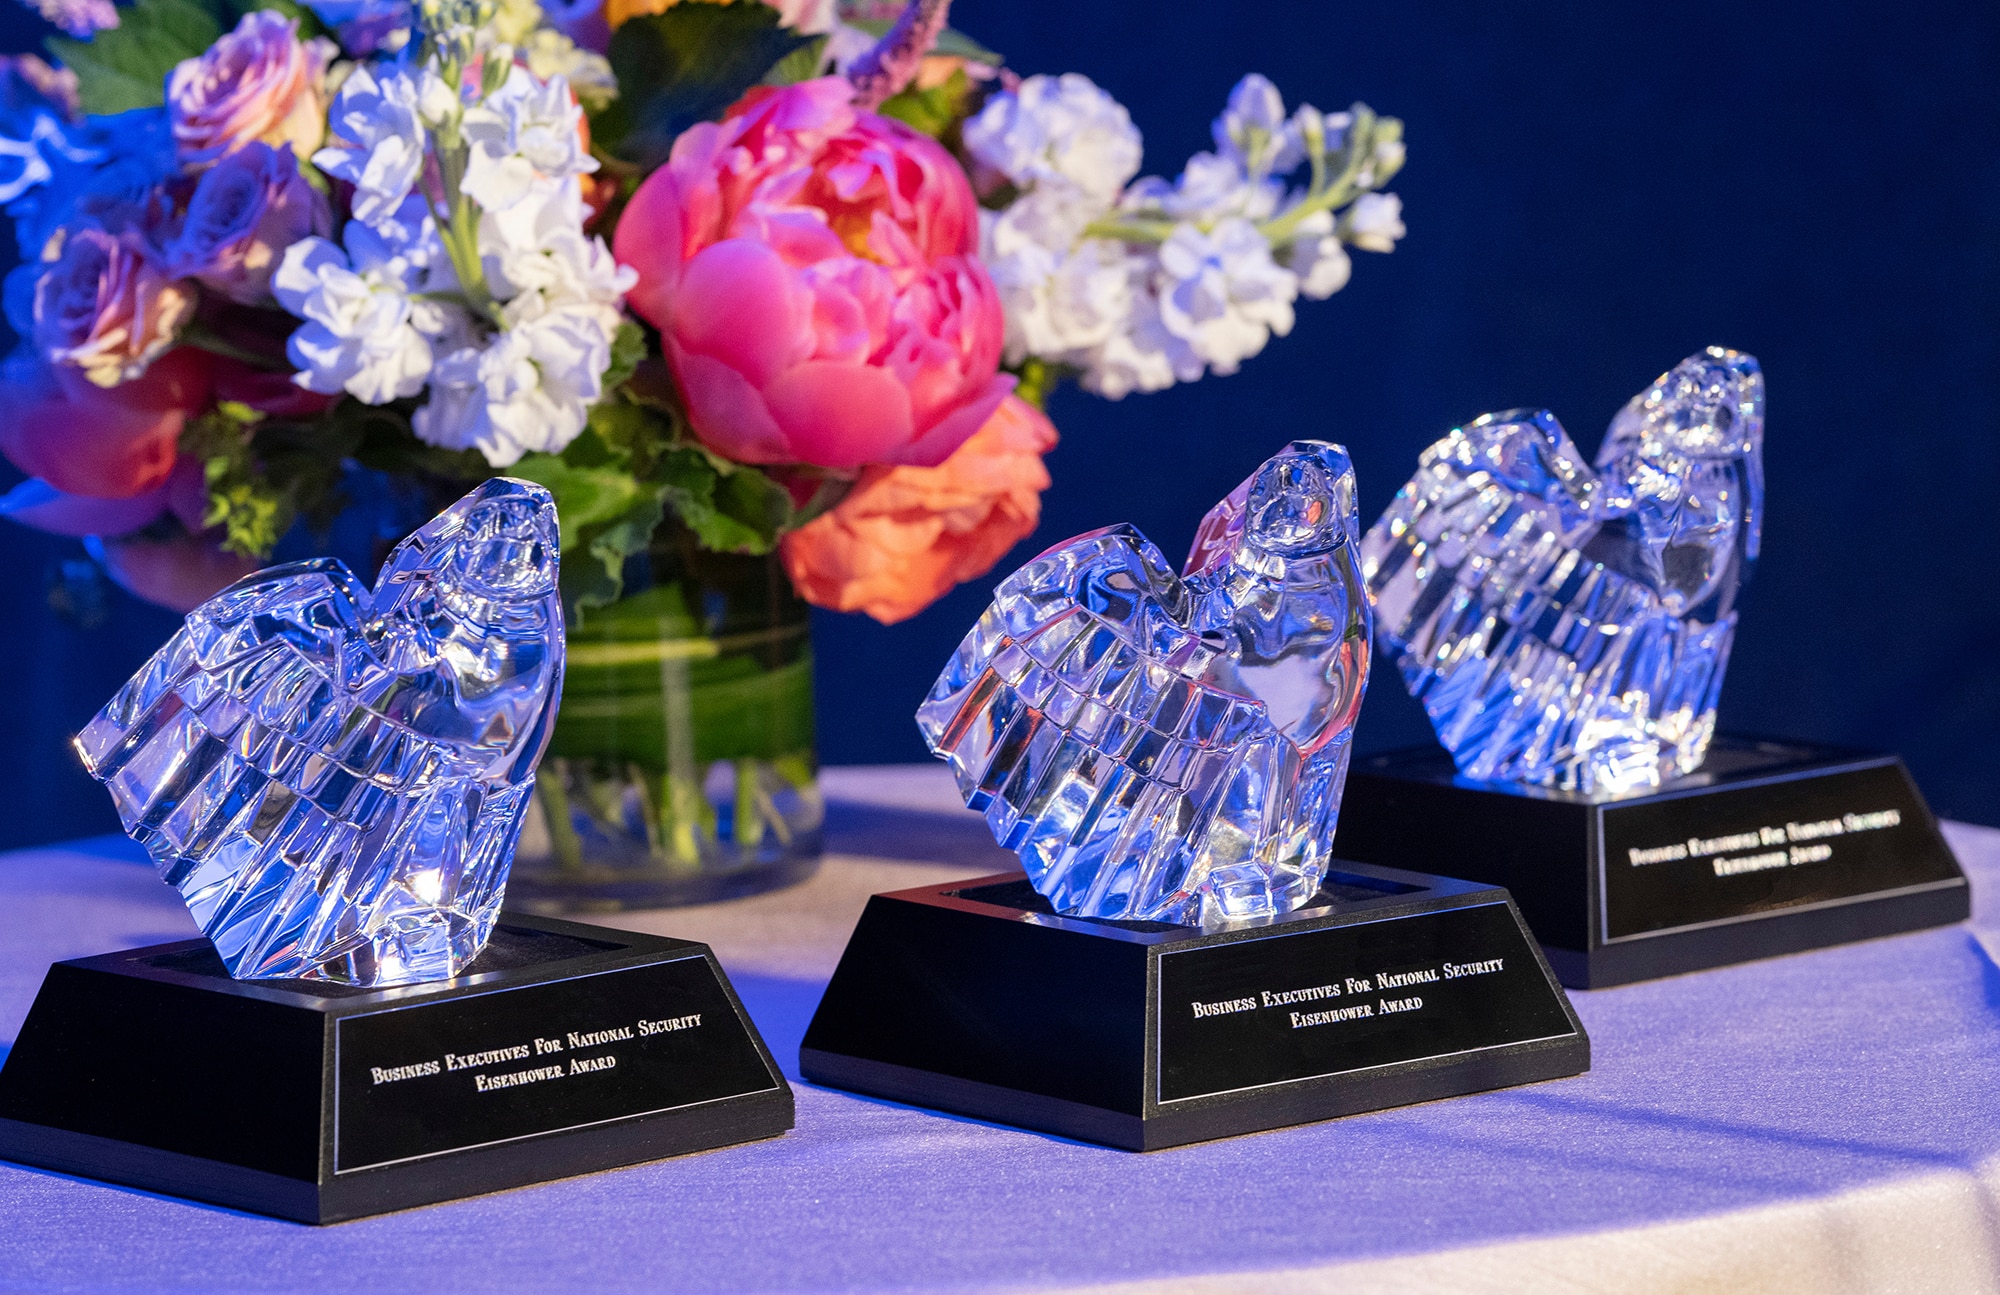 Awards displayed at the BENS Eisenhower Gala